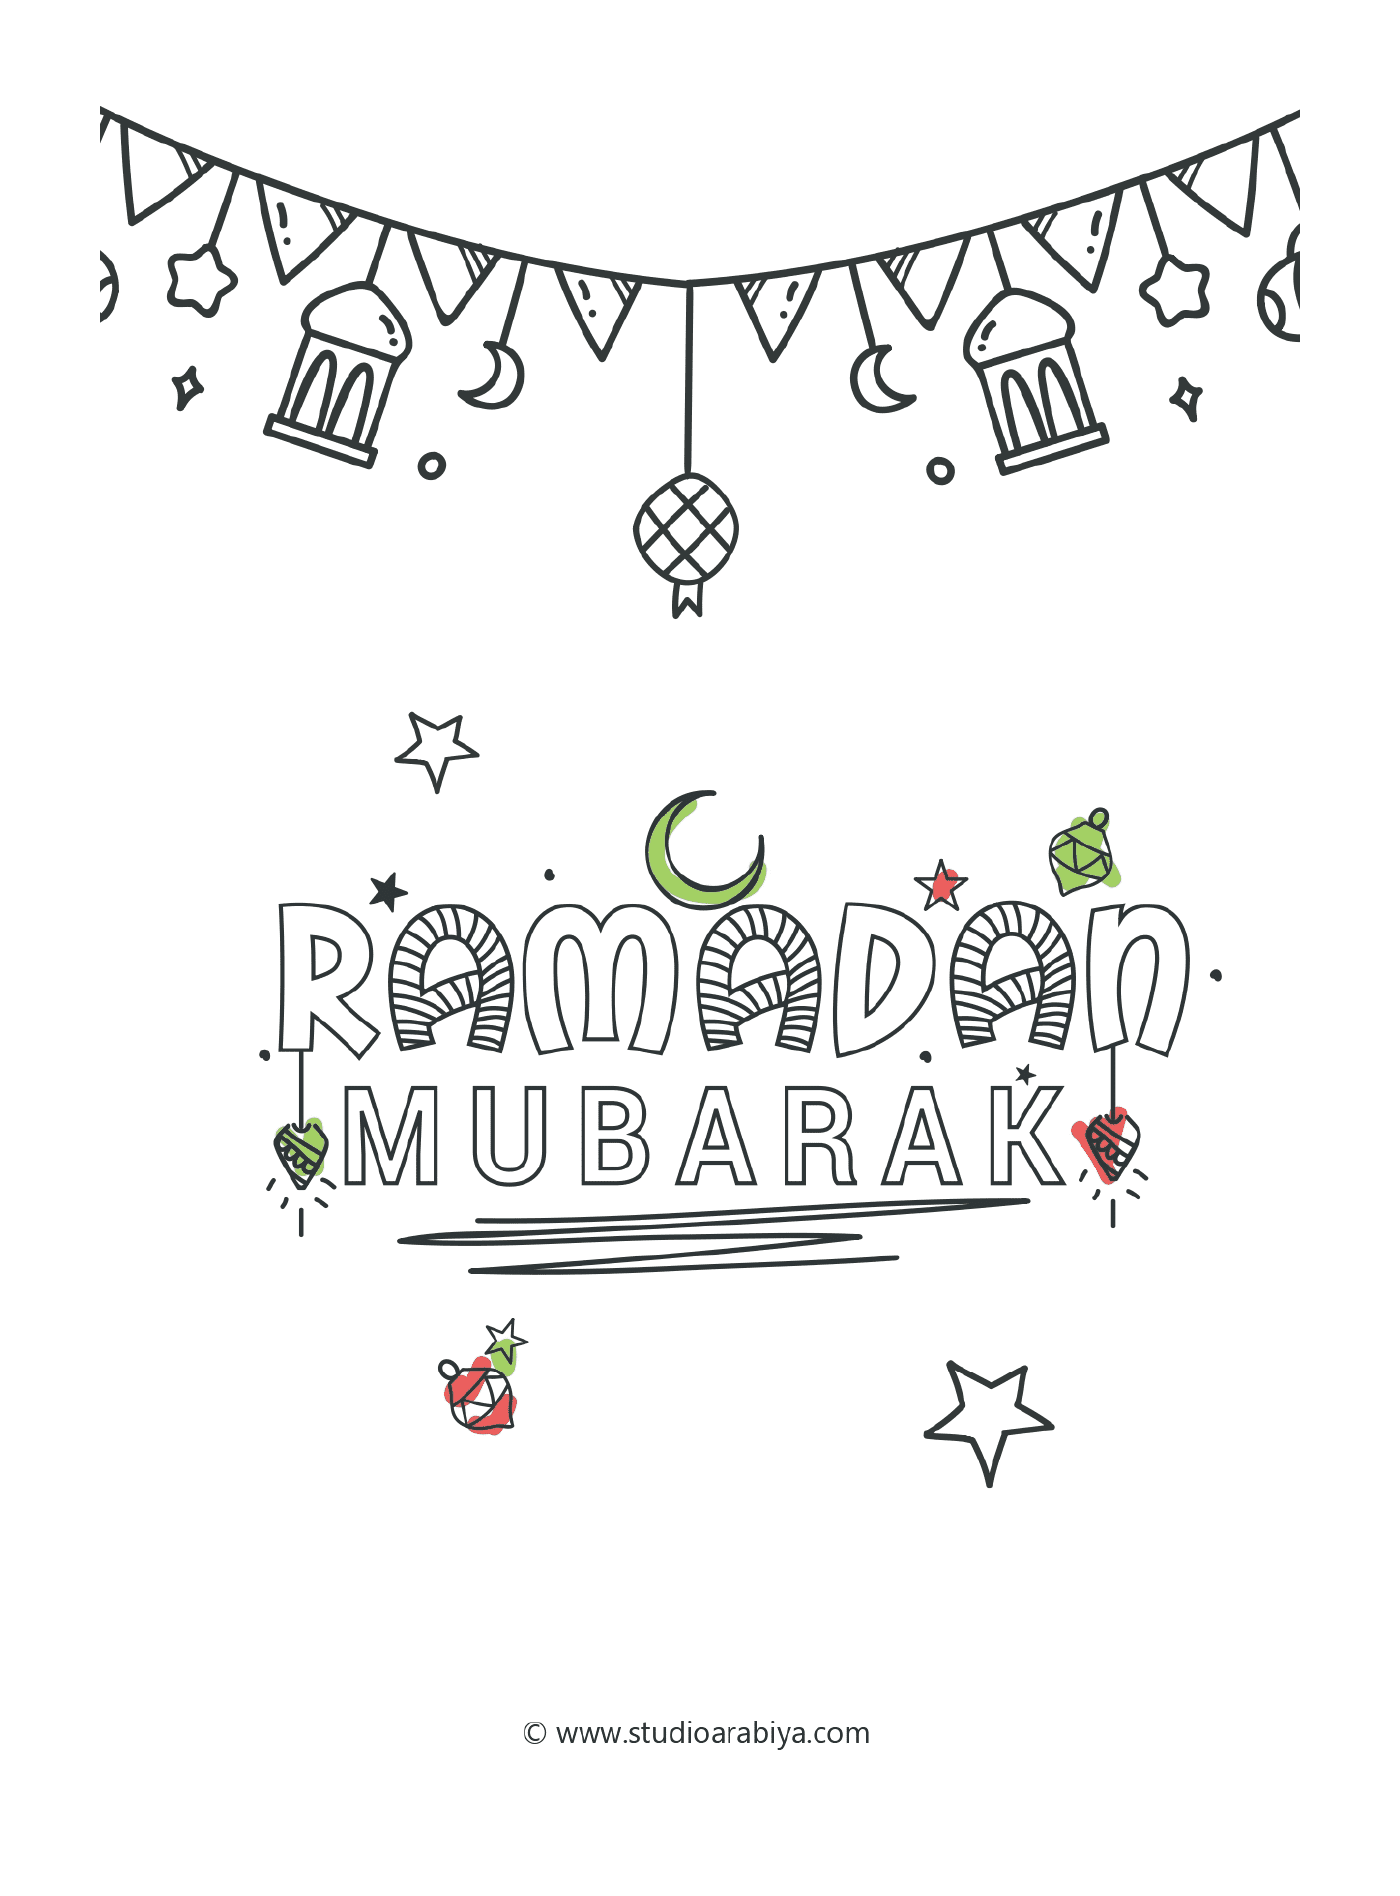  Ramadan Mubarak, fröhliche Festlichkeiten 